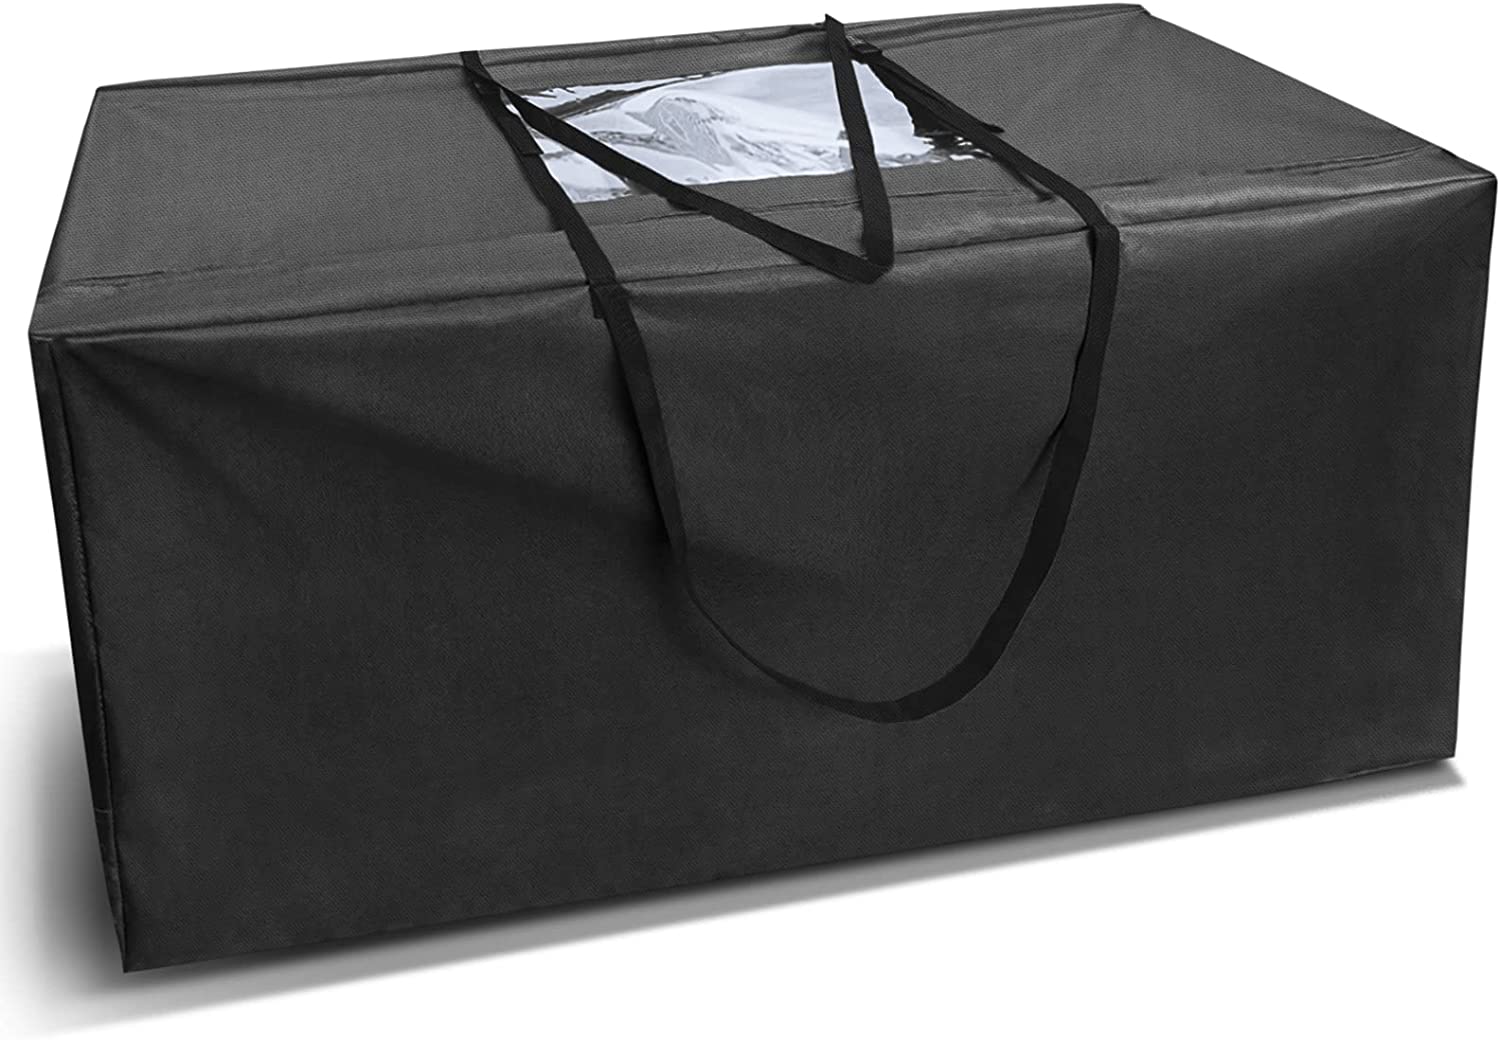 ถุงเก็บที่นอนพับได้ Heavy Duty Carry Trifold Mattress Case fold Bag